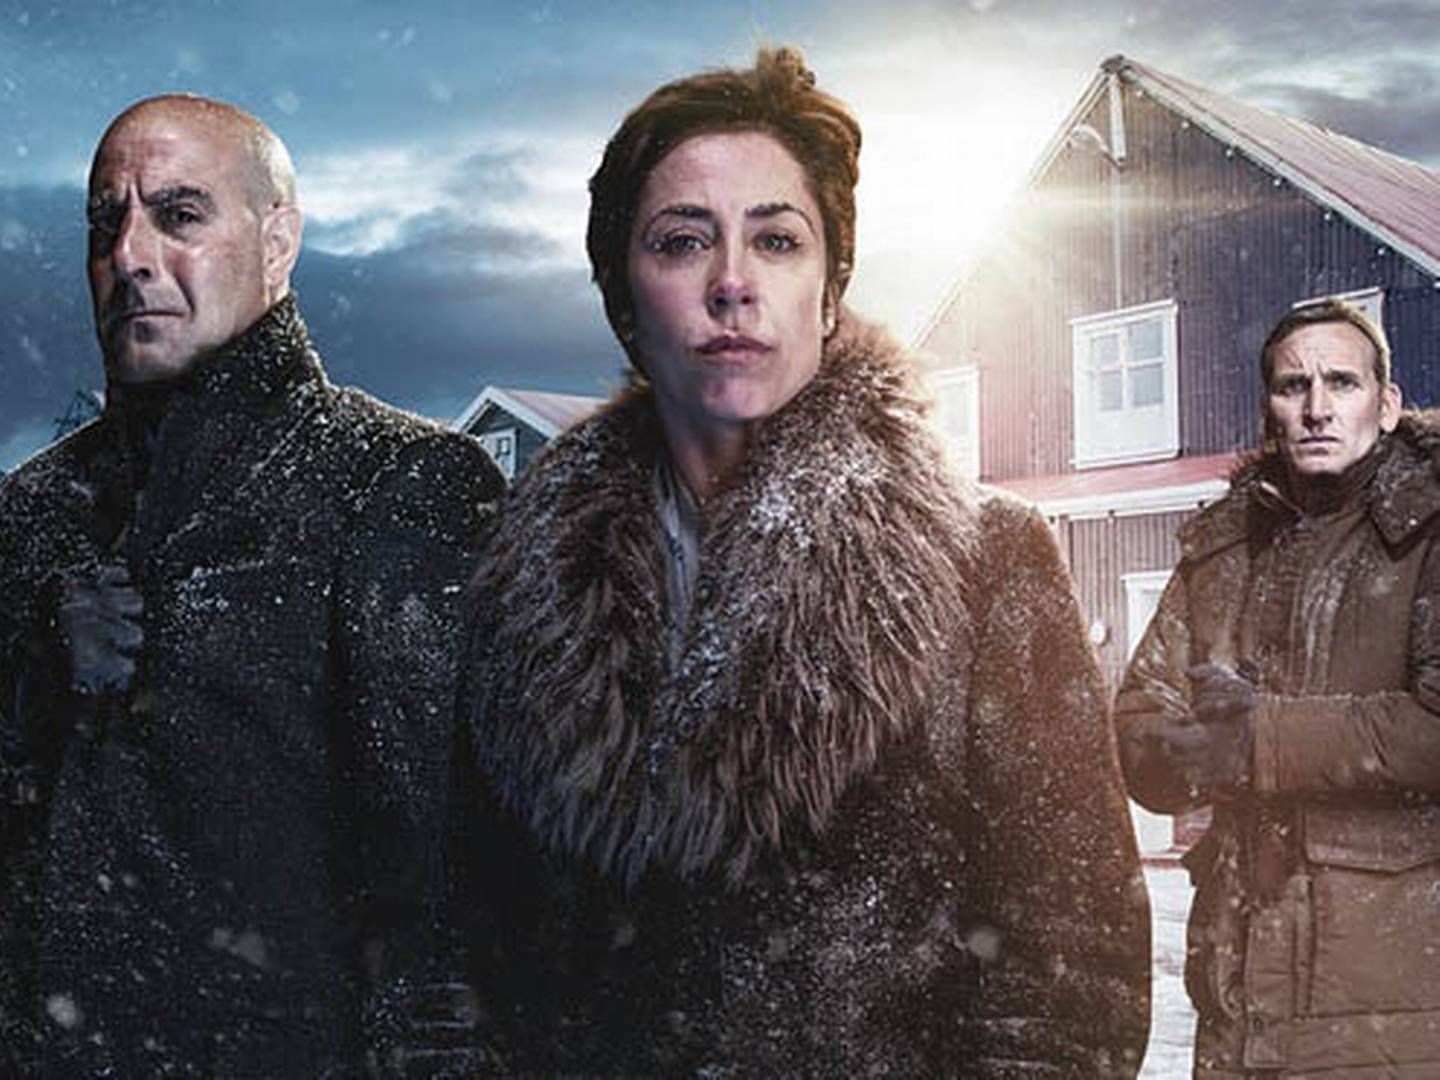 Den nordic noir-inspirerede dramaserie "Fortitude" med Sofie Gråbøl i en af de bærende roller er Skys hidtil dyreste dramainstering og solgt til mere end 100 lande